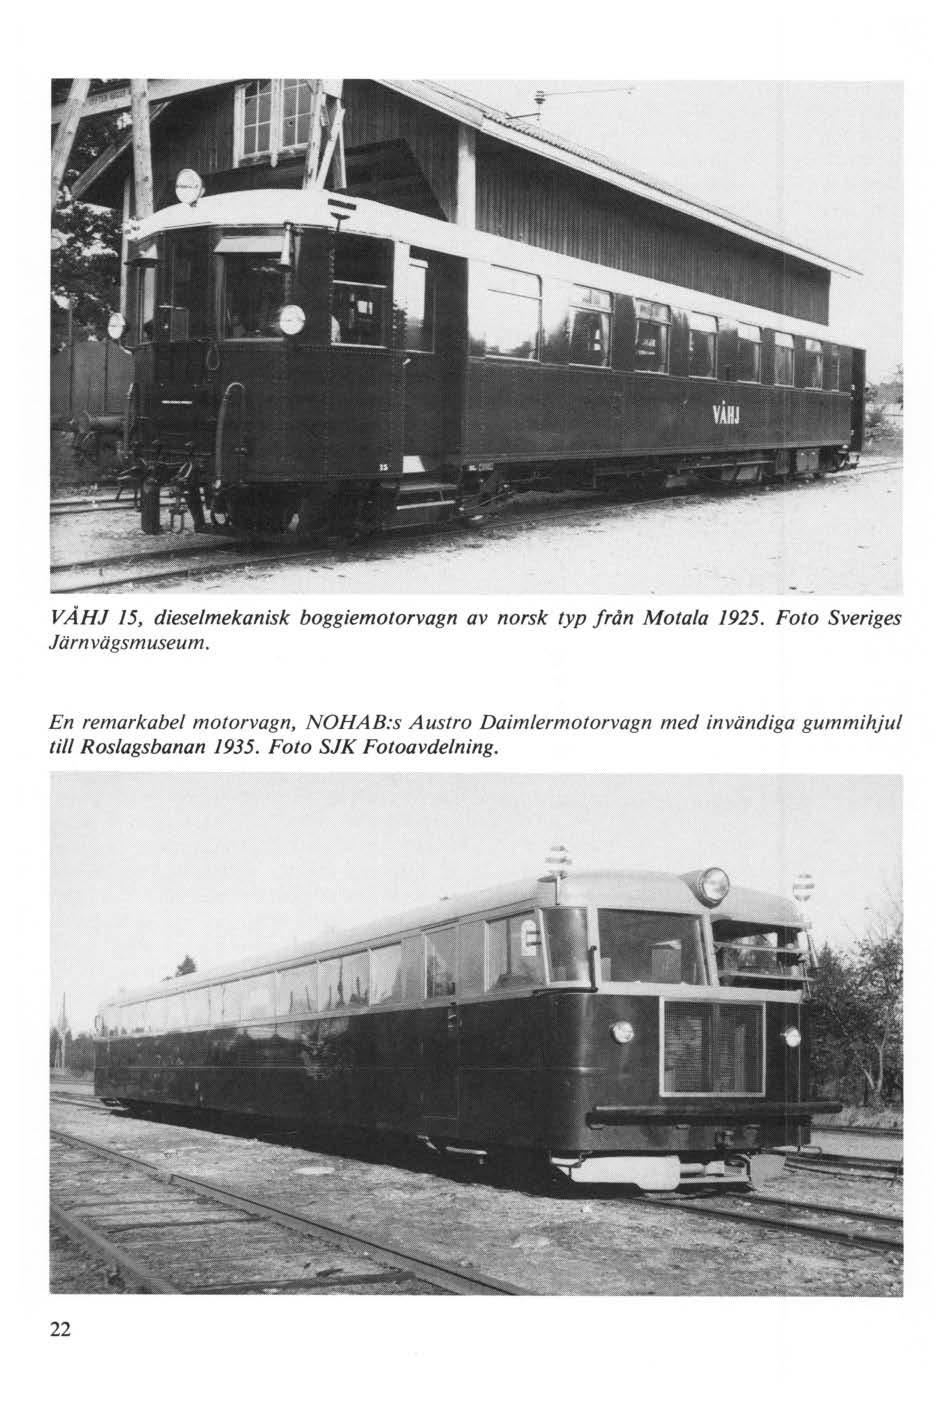 VÄHJ 15, dieselmekanisk boggiemotorvagn av norsk typ från Motala 1925. Foto Sveriges Järnvägsmuseum.